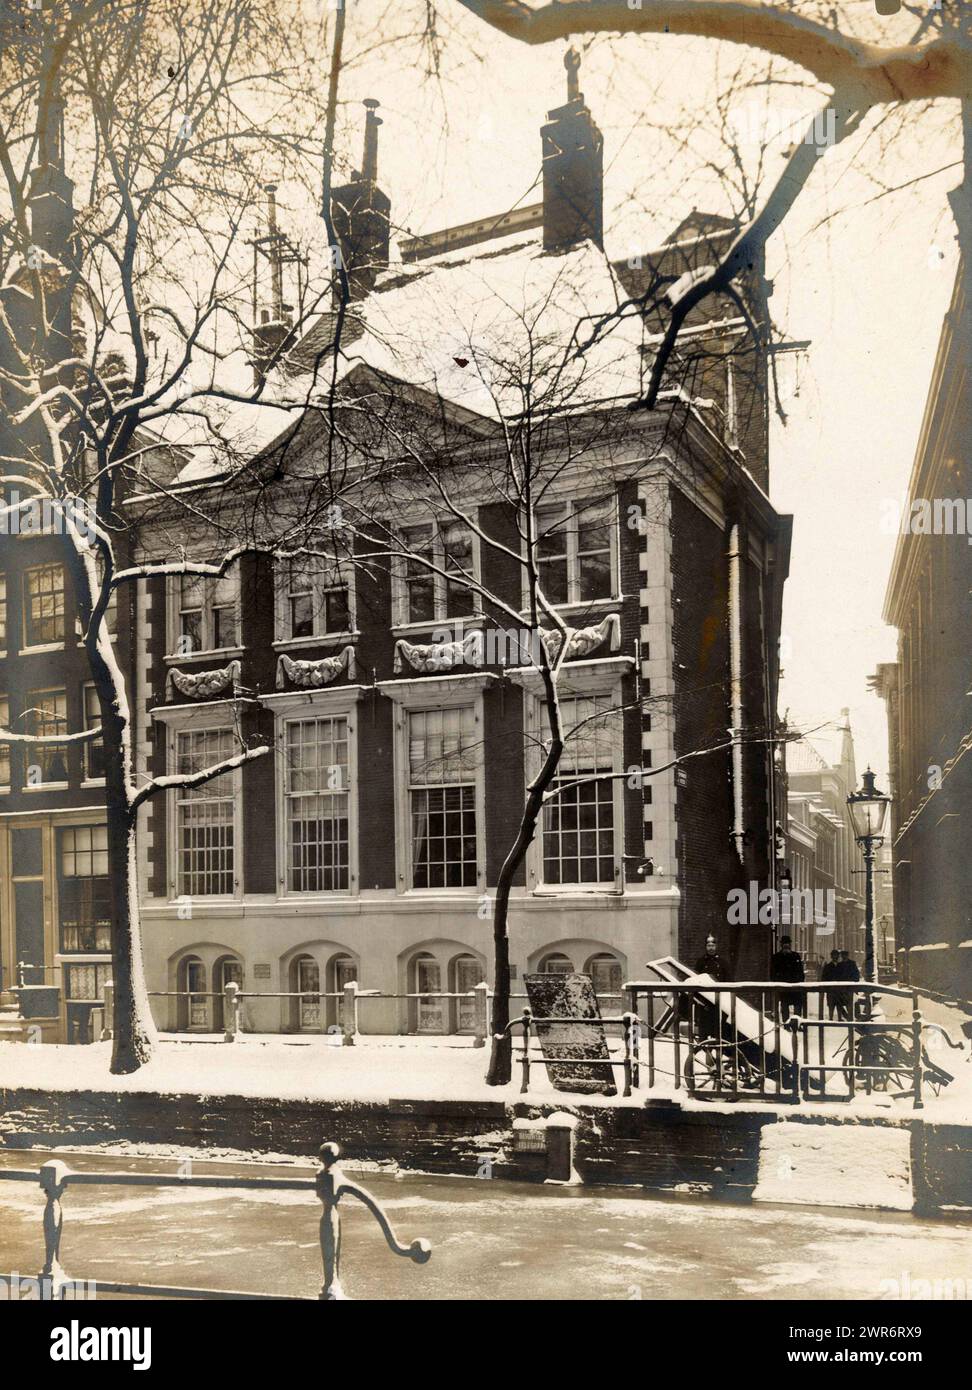 Vista della vecchia Spinhuis sull'Oudezijds Achterburgwal di Amsterdam, in inverno, anonimo, Amsterdam, 1900 - 1920, supporto fotografico, stampa in gelatina argento, altezza 217 mm x larghezza 163 mm, altezza 324 mm x larghezza 236 mm, fotografia Foto Stock